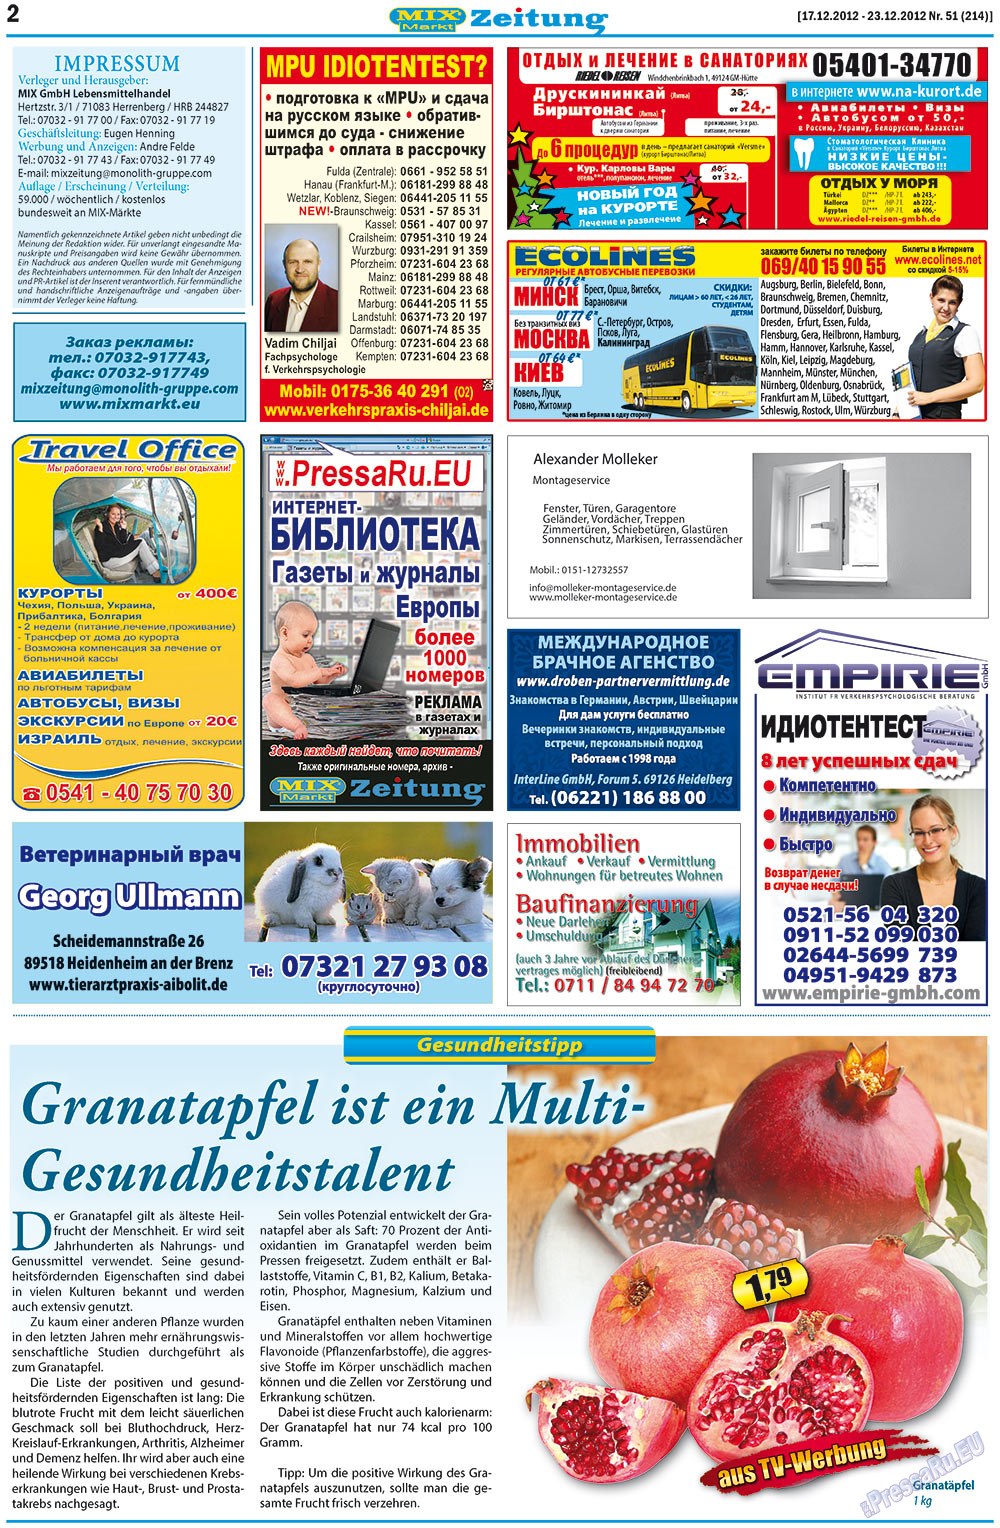 MIX-Markt Zeitung (газета). 2012 год, номер 51, стр. 2